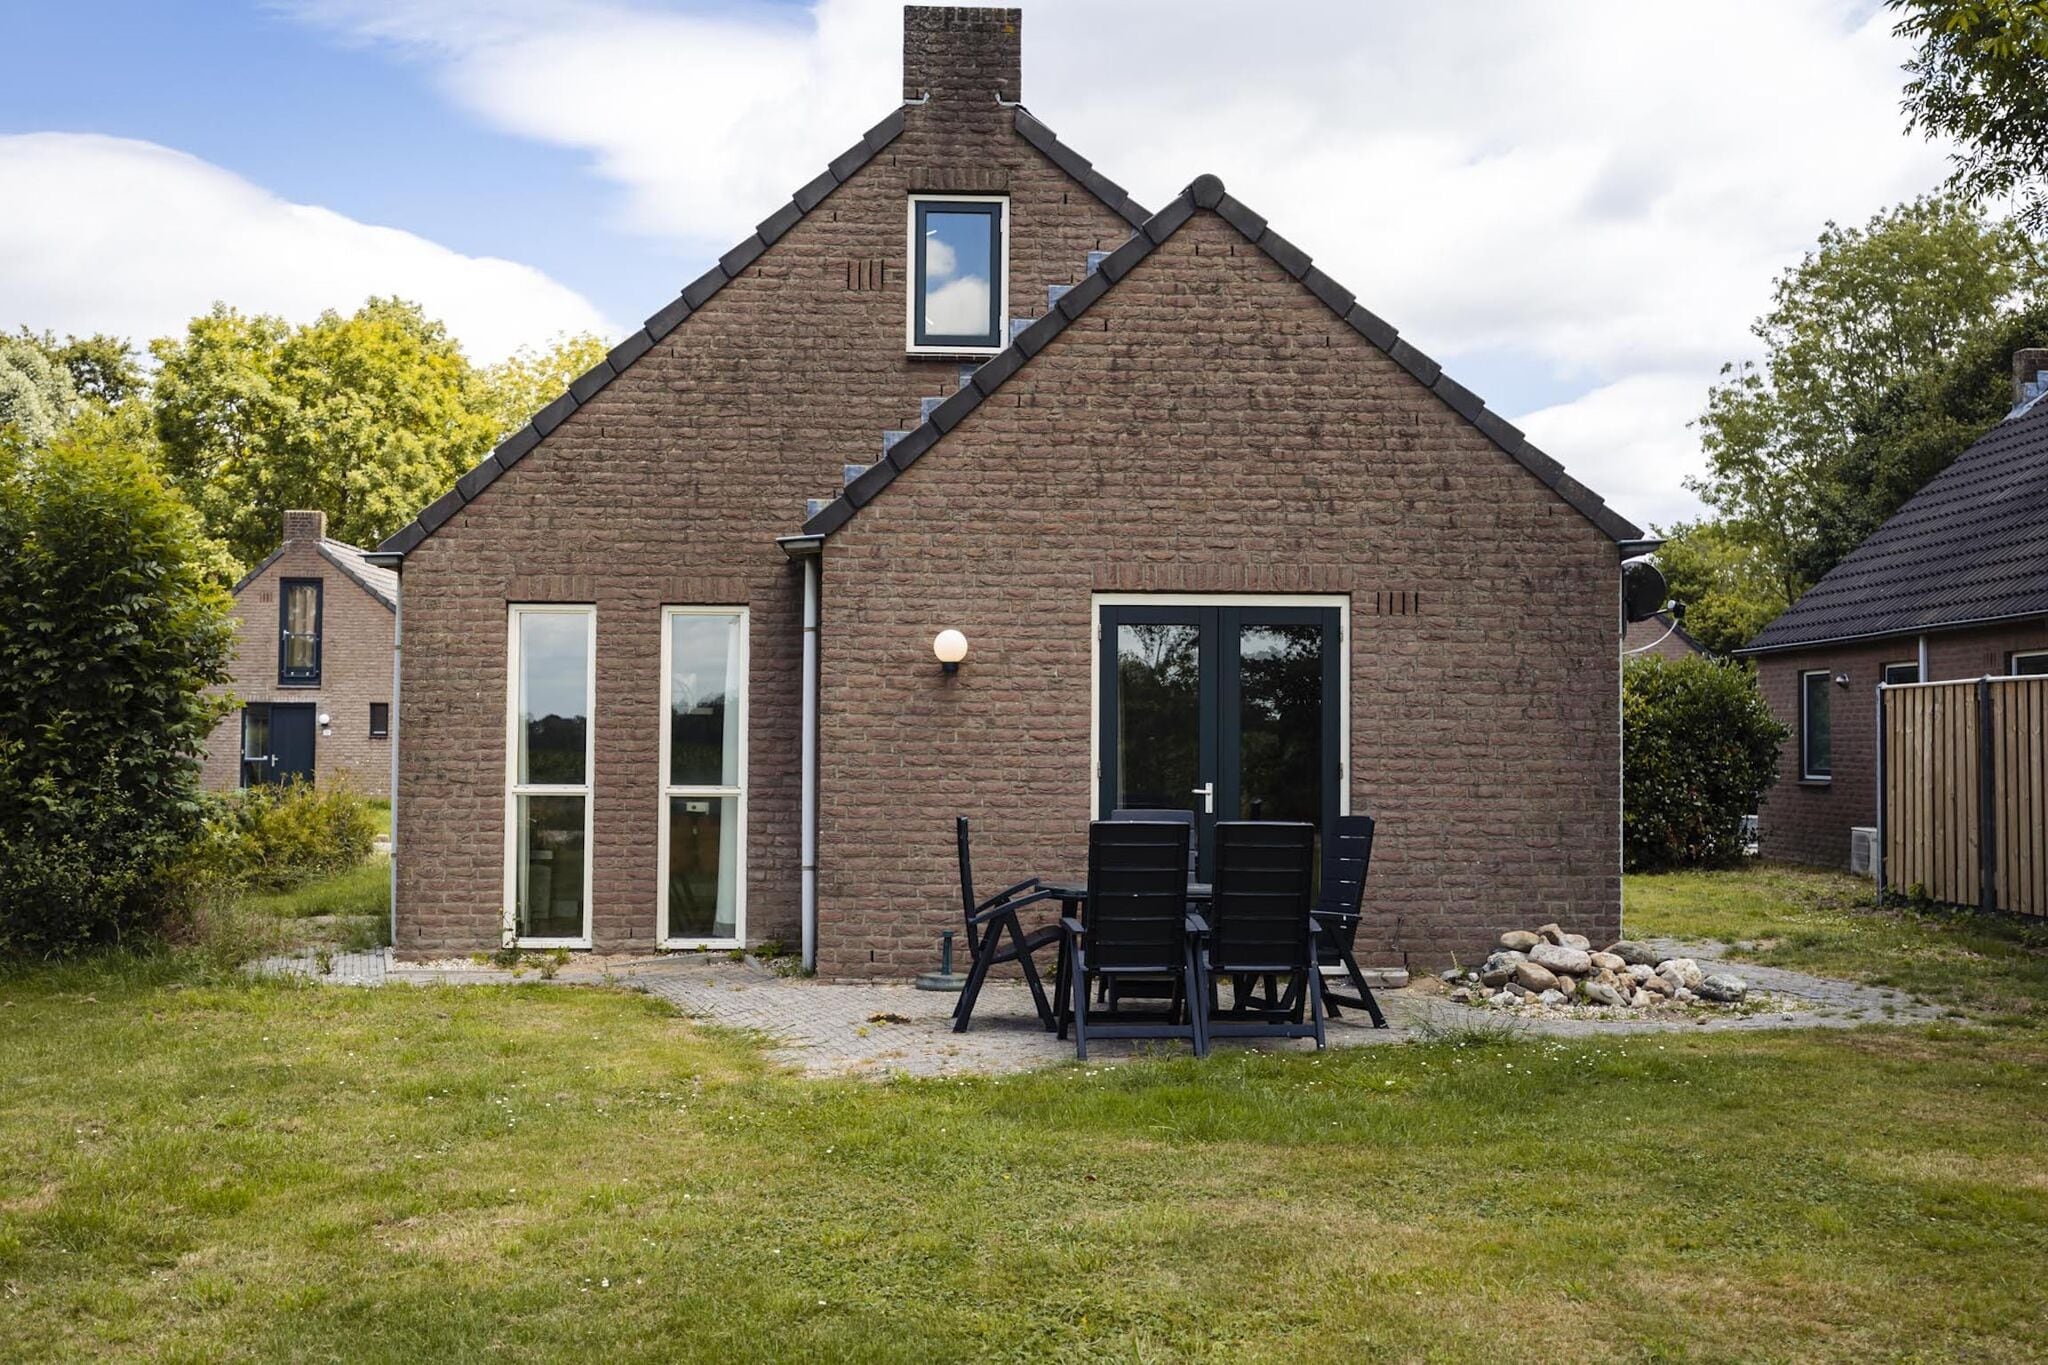 Maison de vacances indépendante près de Nijmegen